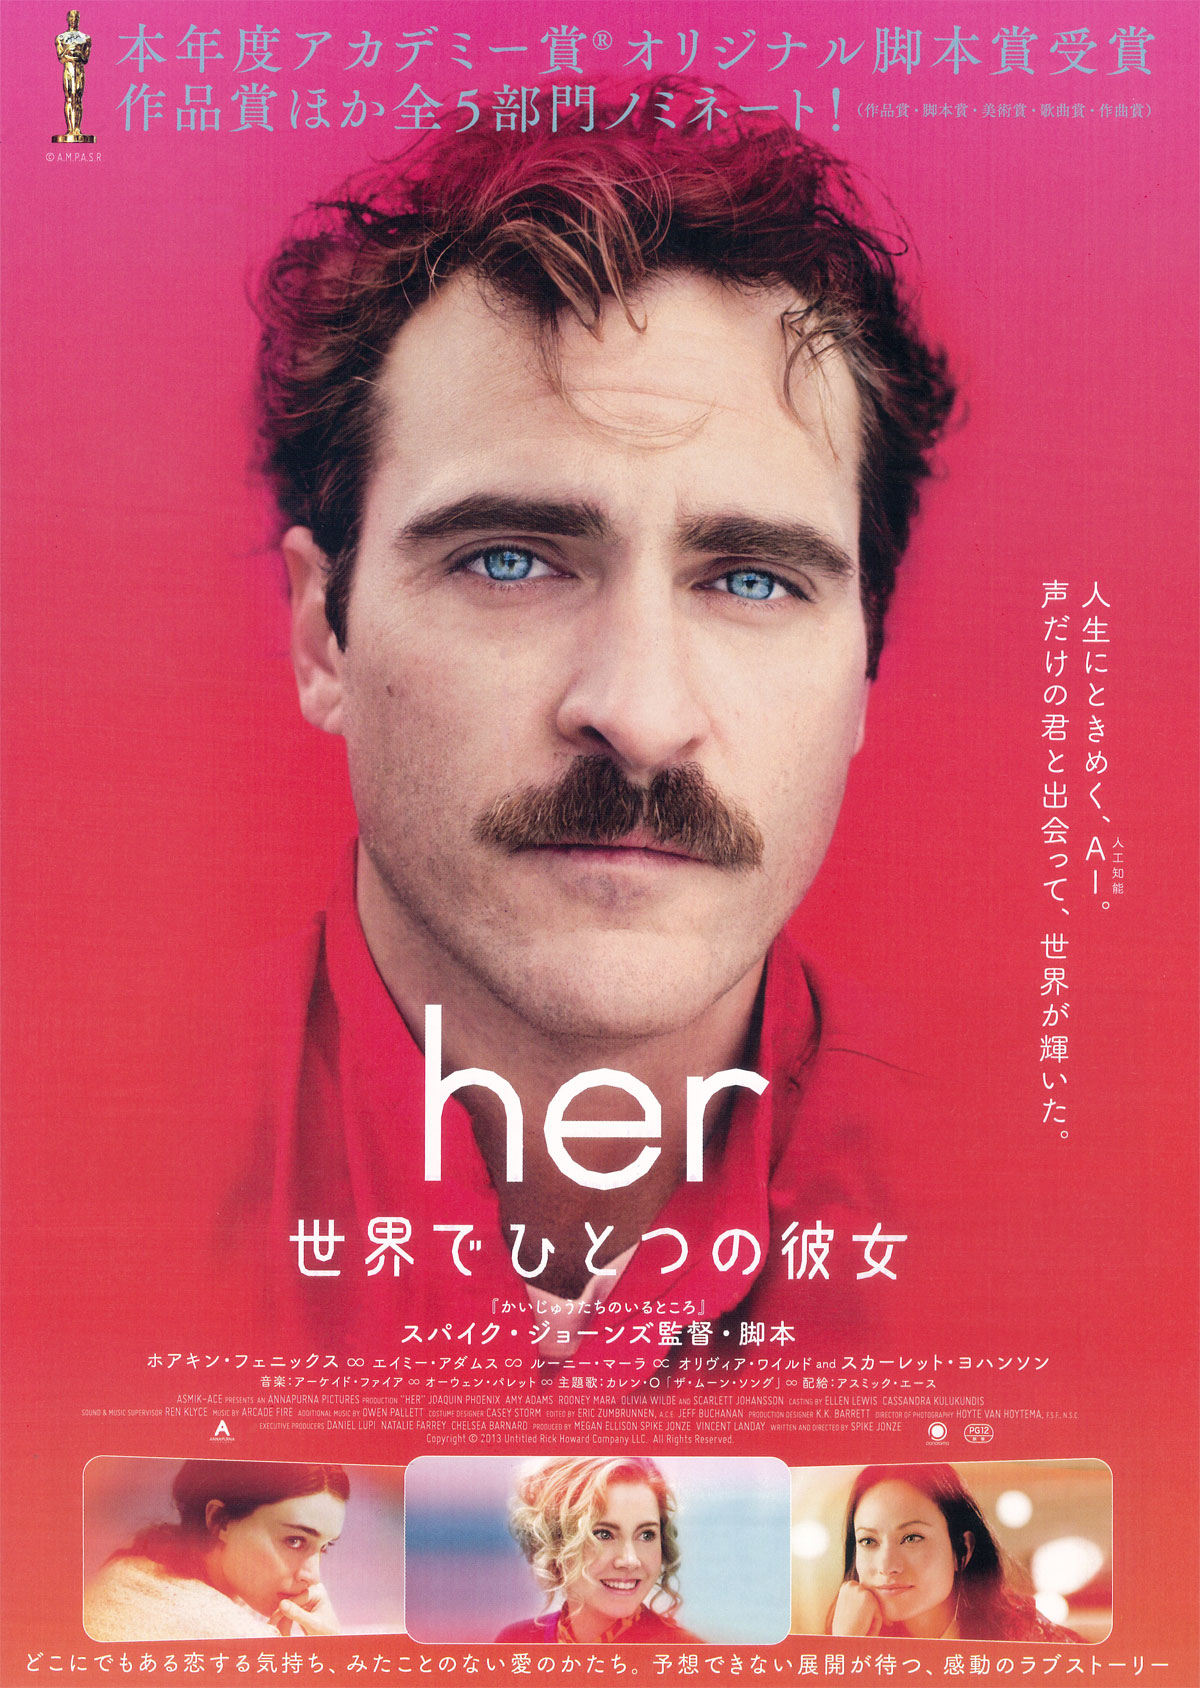 2013年の映画「her/世界でひとつの彼女」で共演